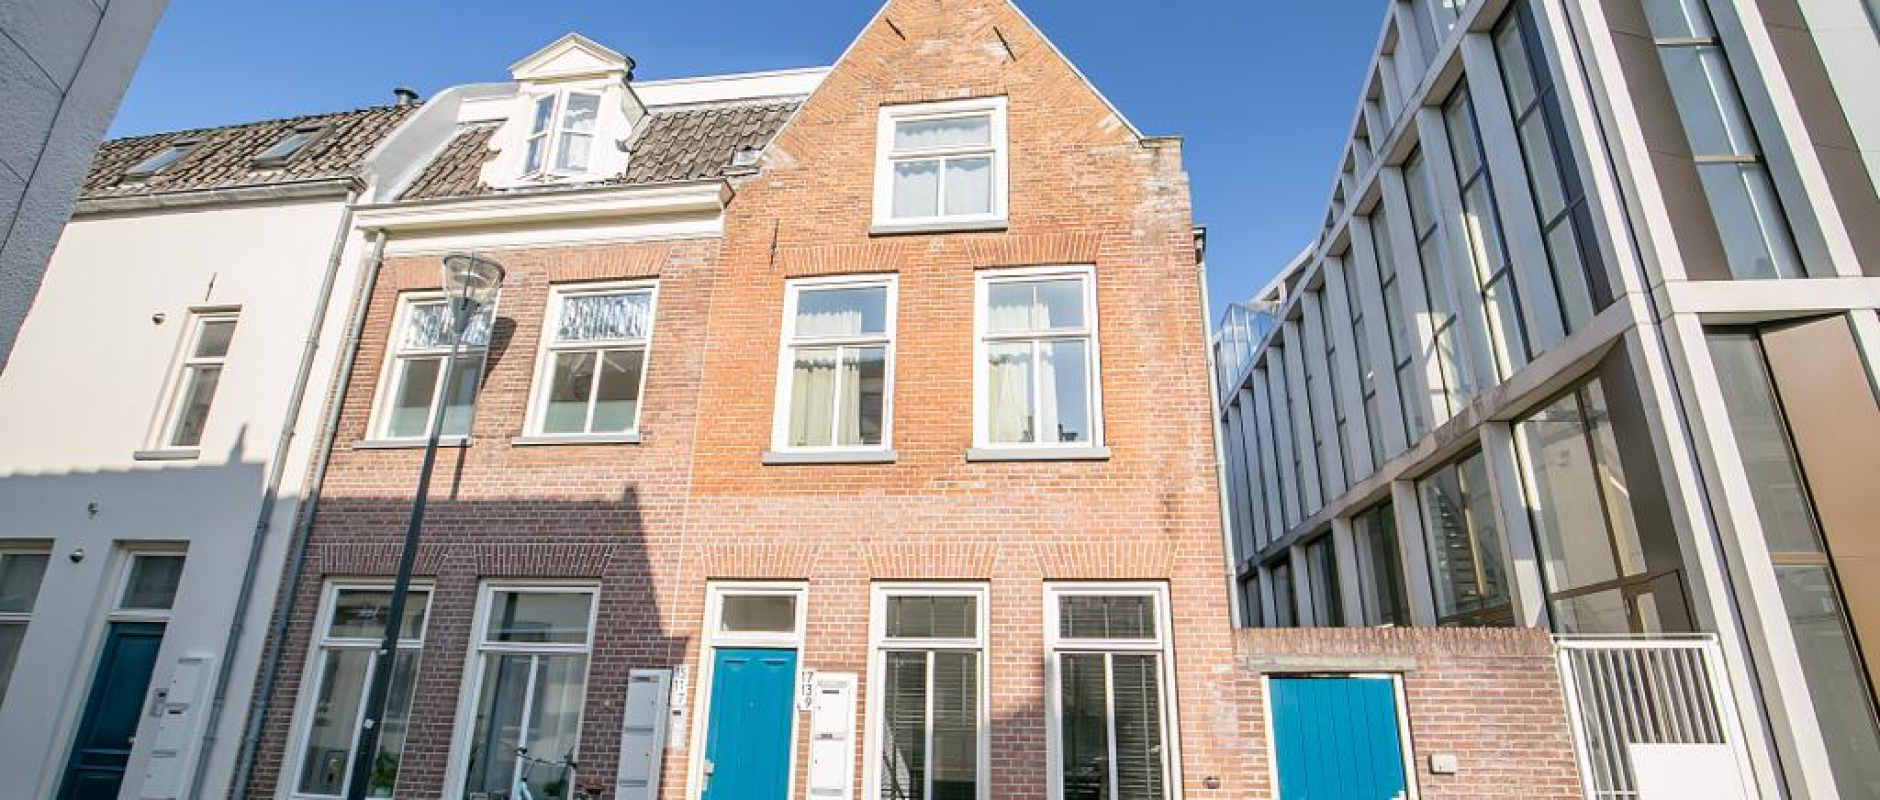 Woning te koop aan de Spoelstraat 9 te Zwolle